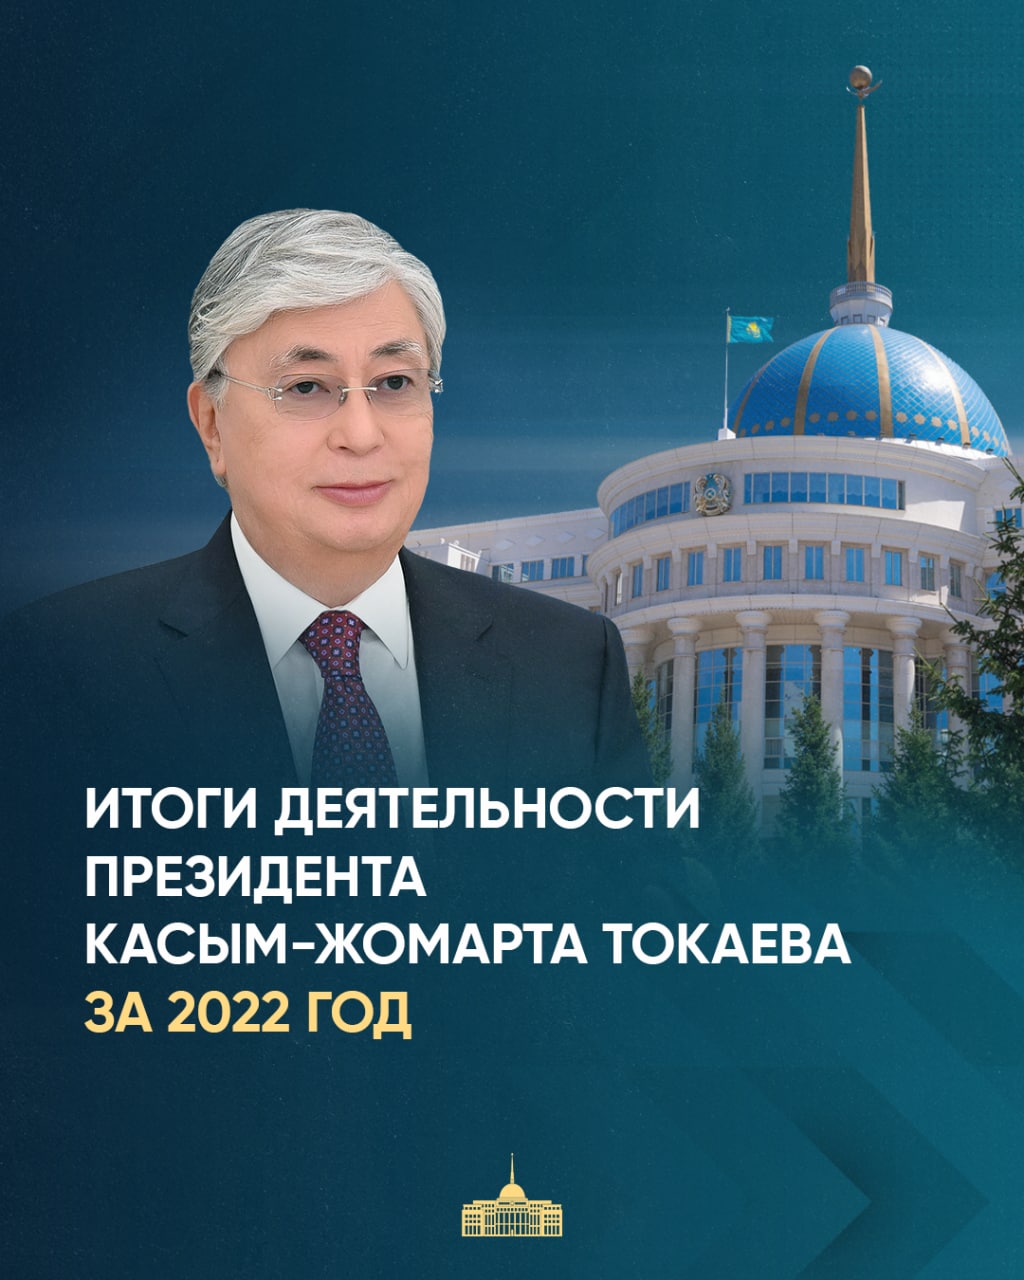 Итоги работы Президента за 2022 год: Токаев провёл в самолёте 239 часов и пролетел 147 тыс. км